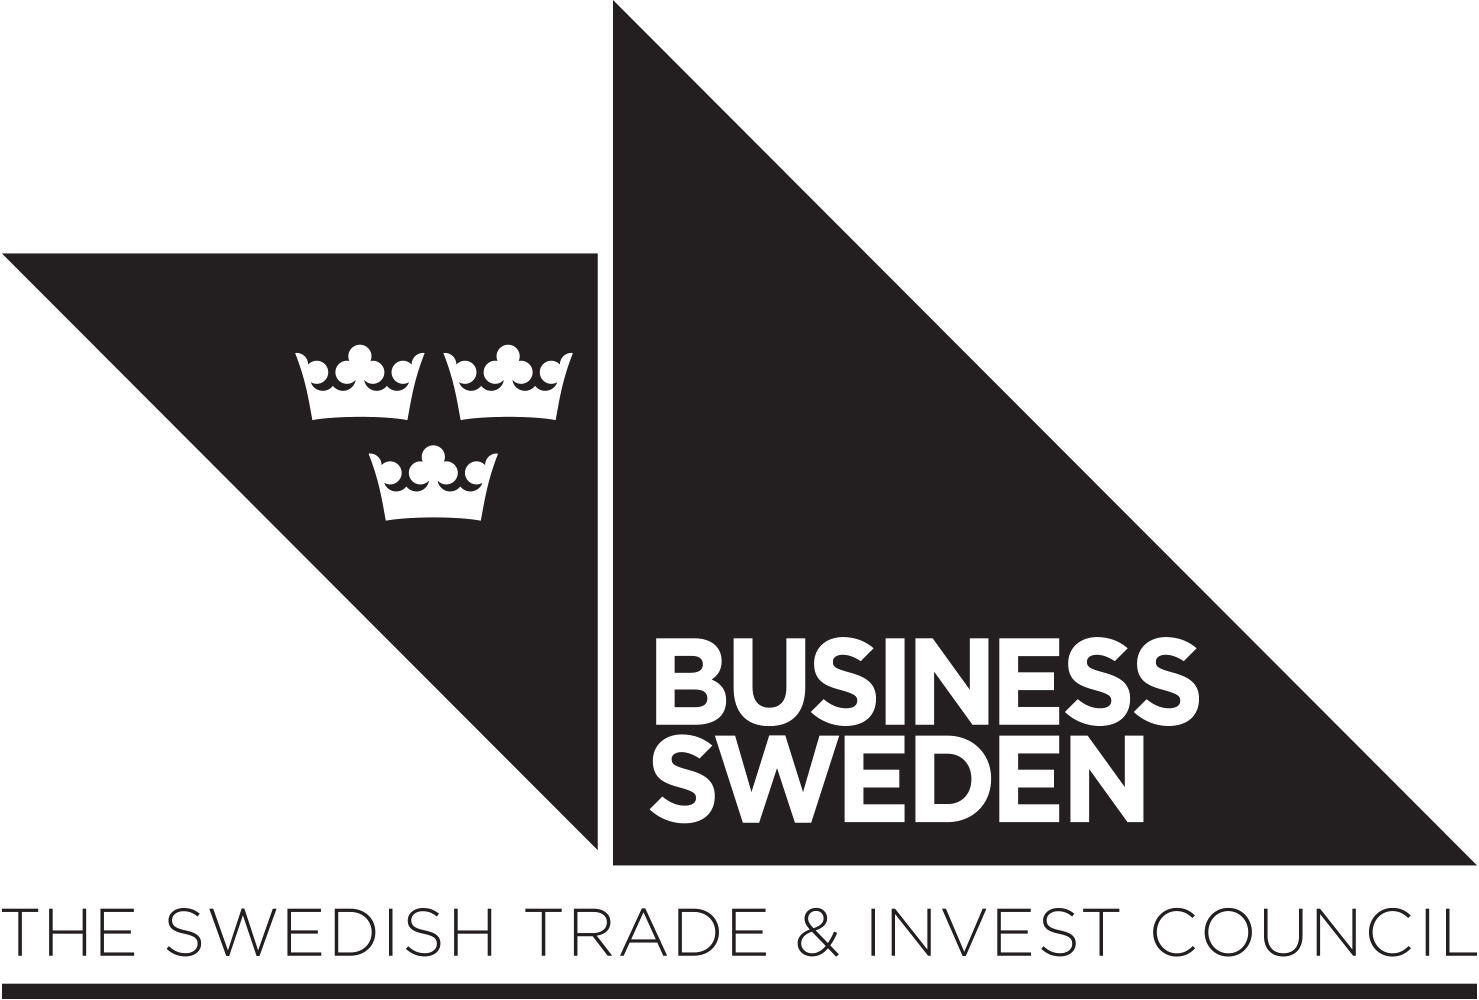 Business Sweden's logo